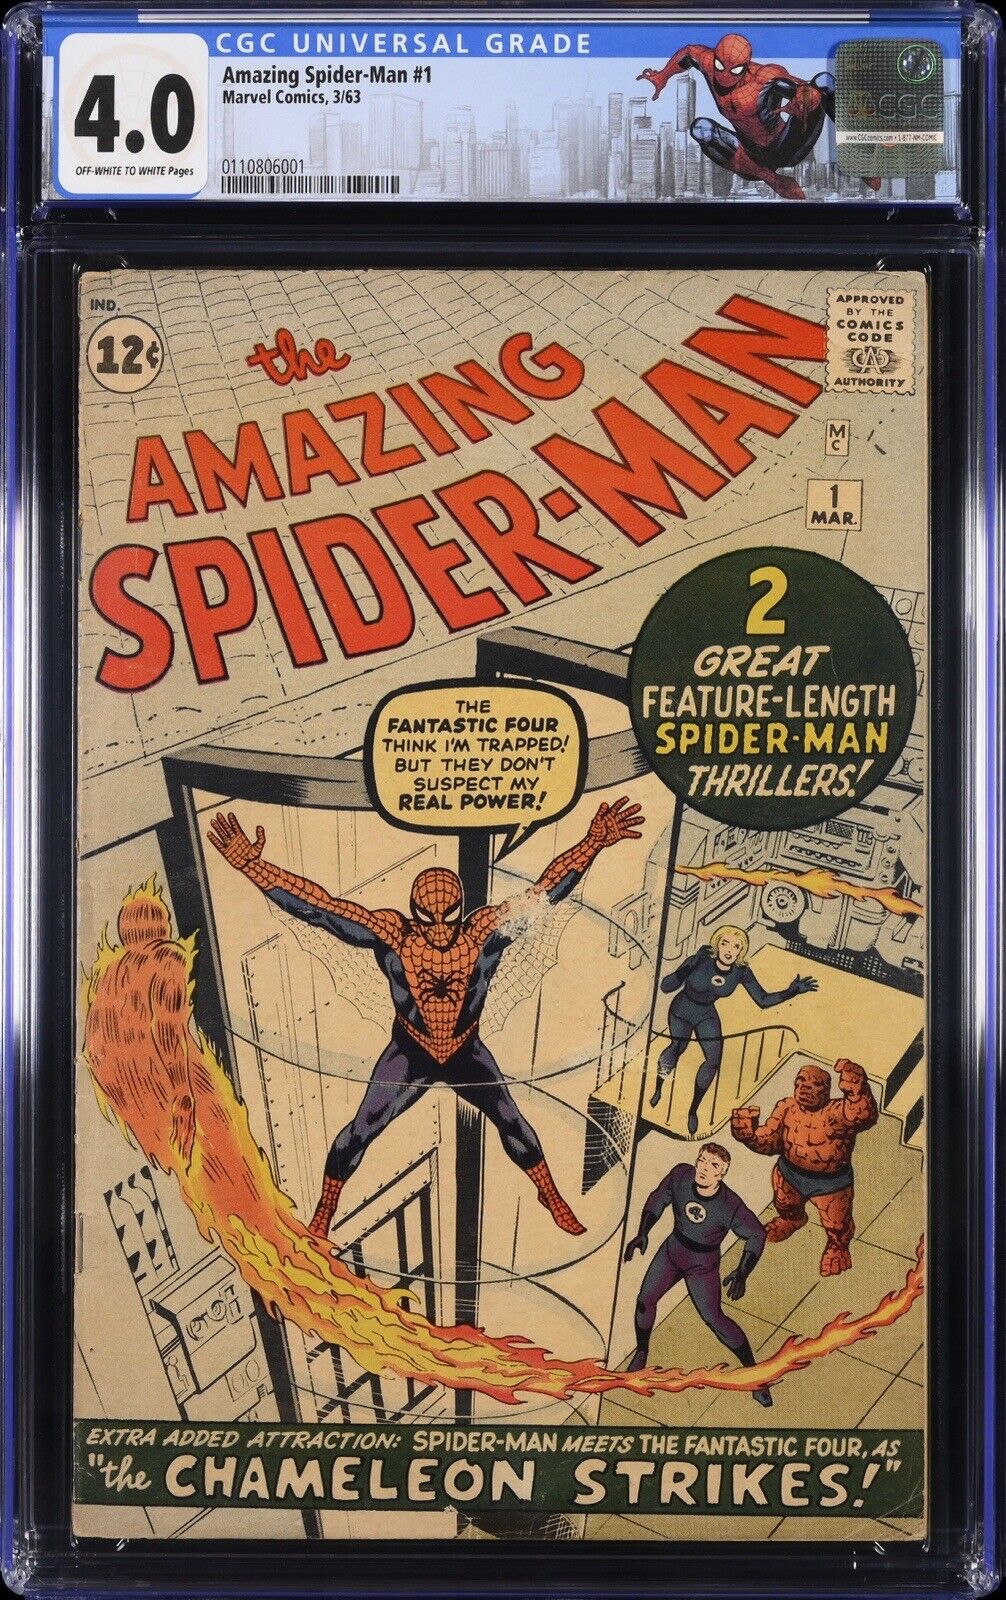 AMAZING SPIDER-MAN #1 CGC 4.0 1963 ORIGINAL SERIES SPECIAL LABEL